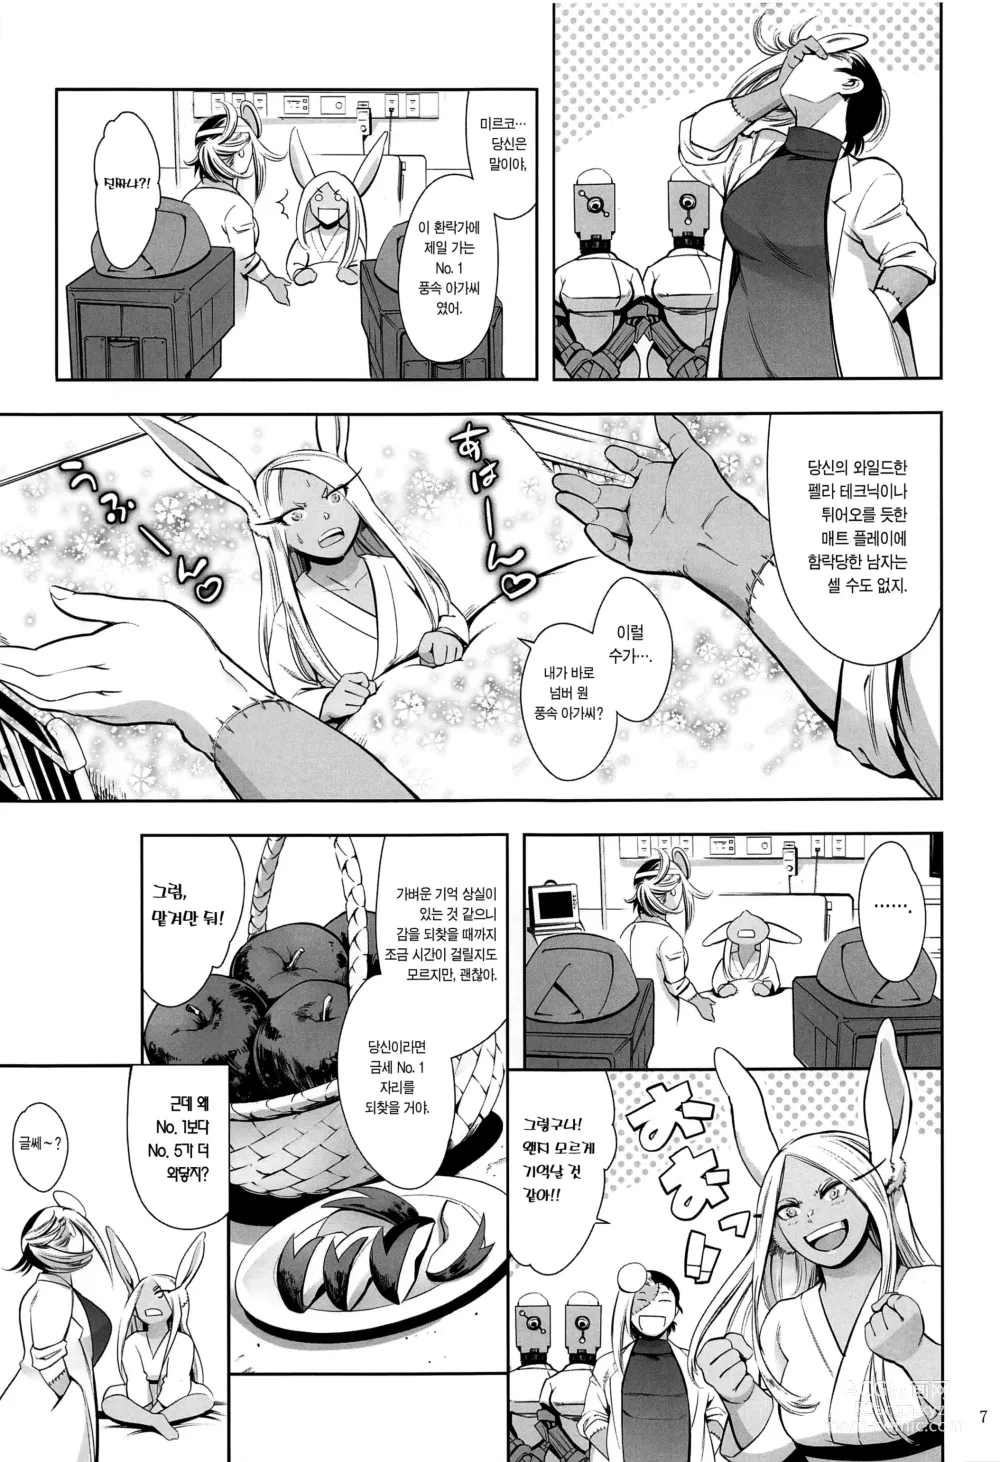 Page 6 of doujinshi 지명은 토끼입니까?